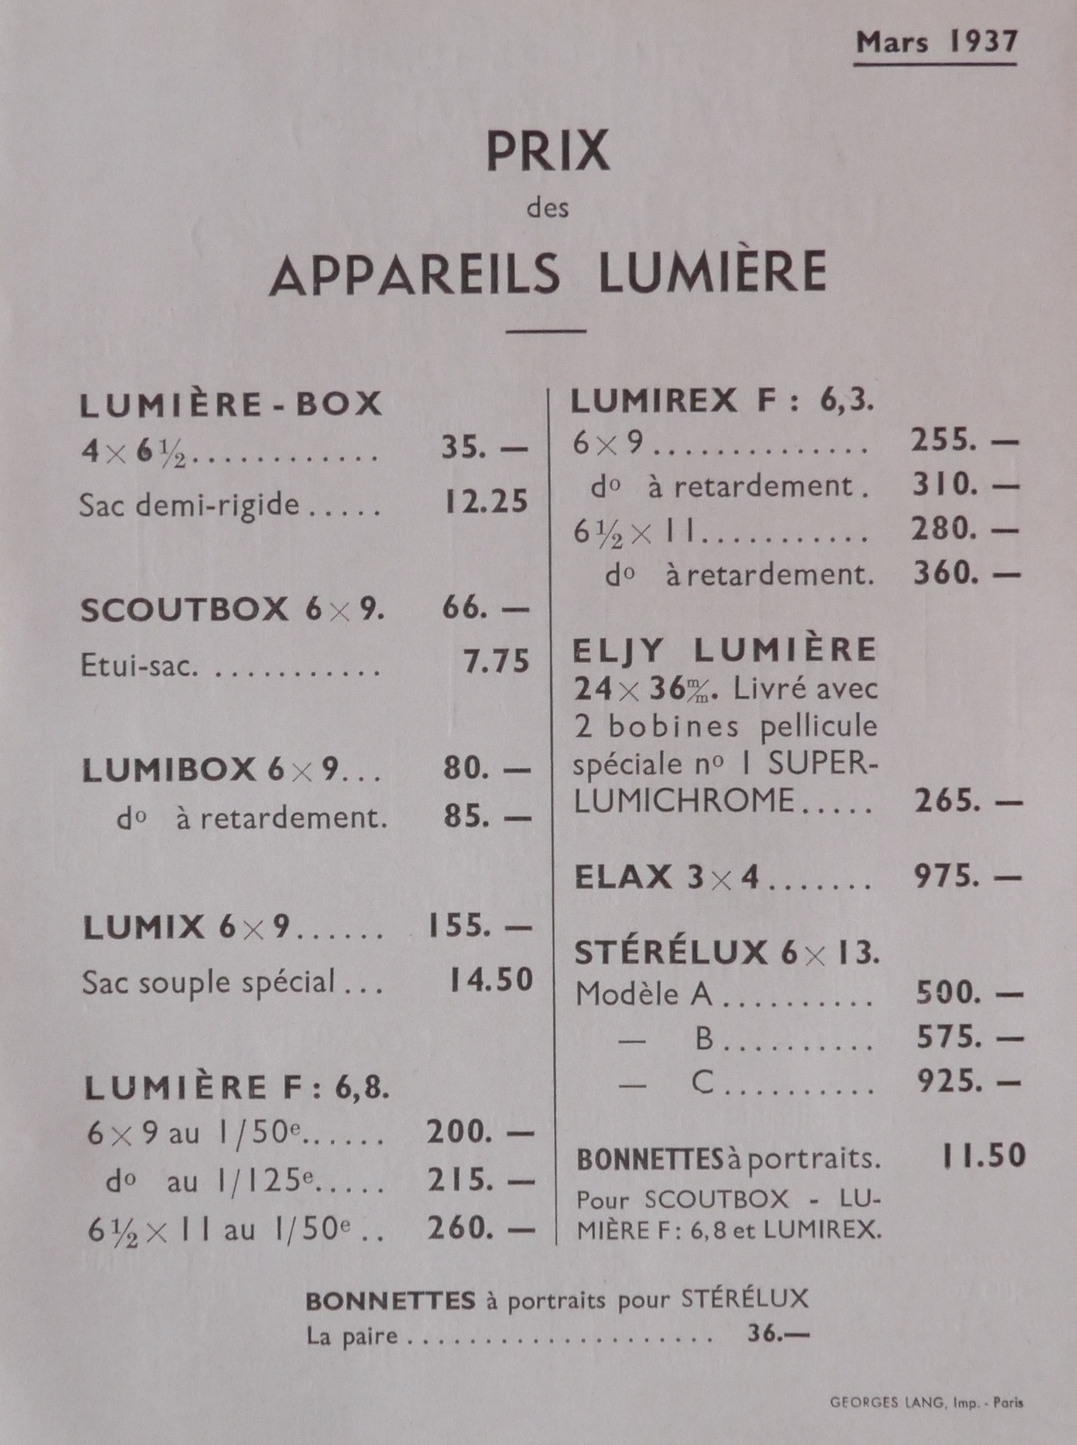 Prix des appareils Lumière - mars 1937